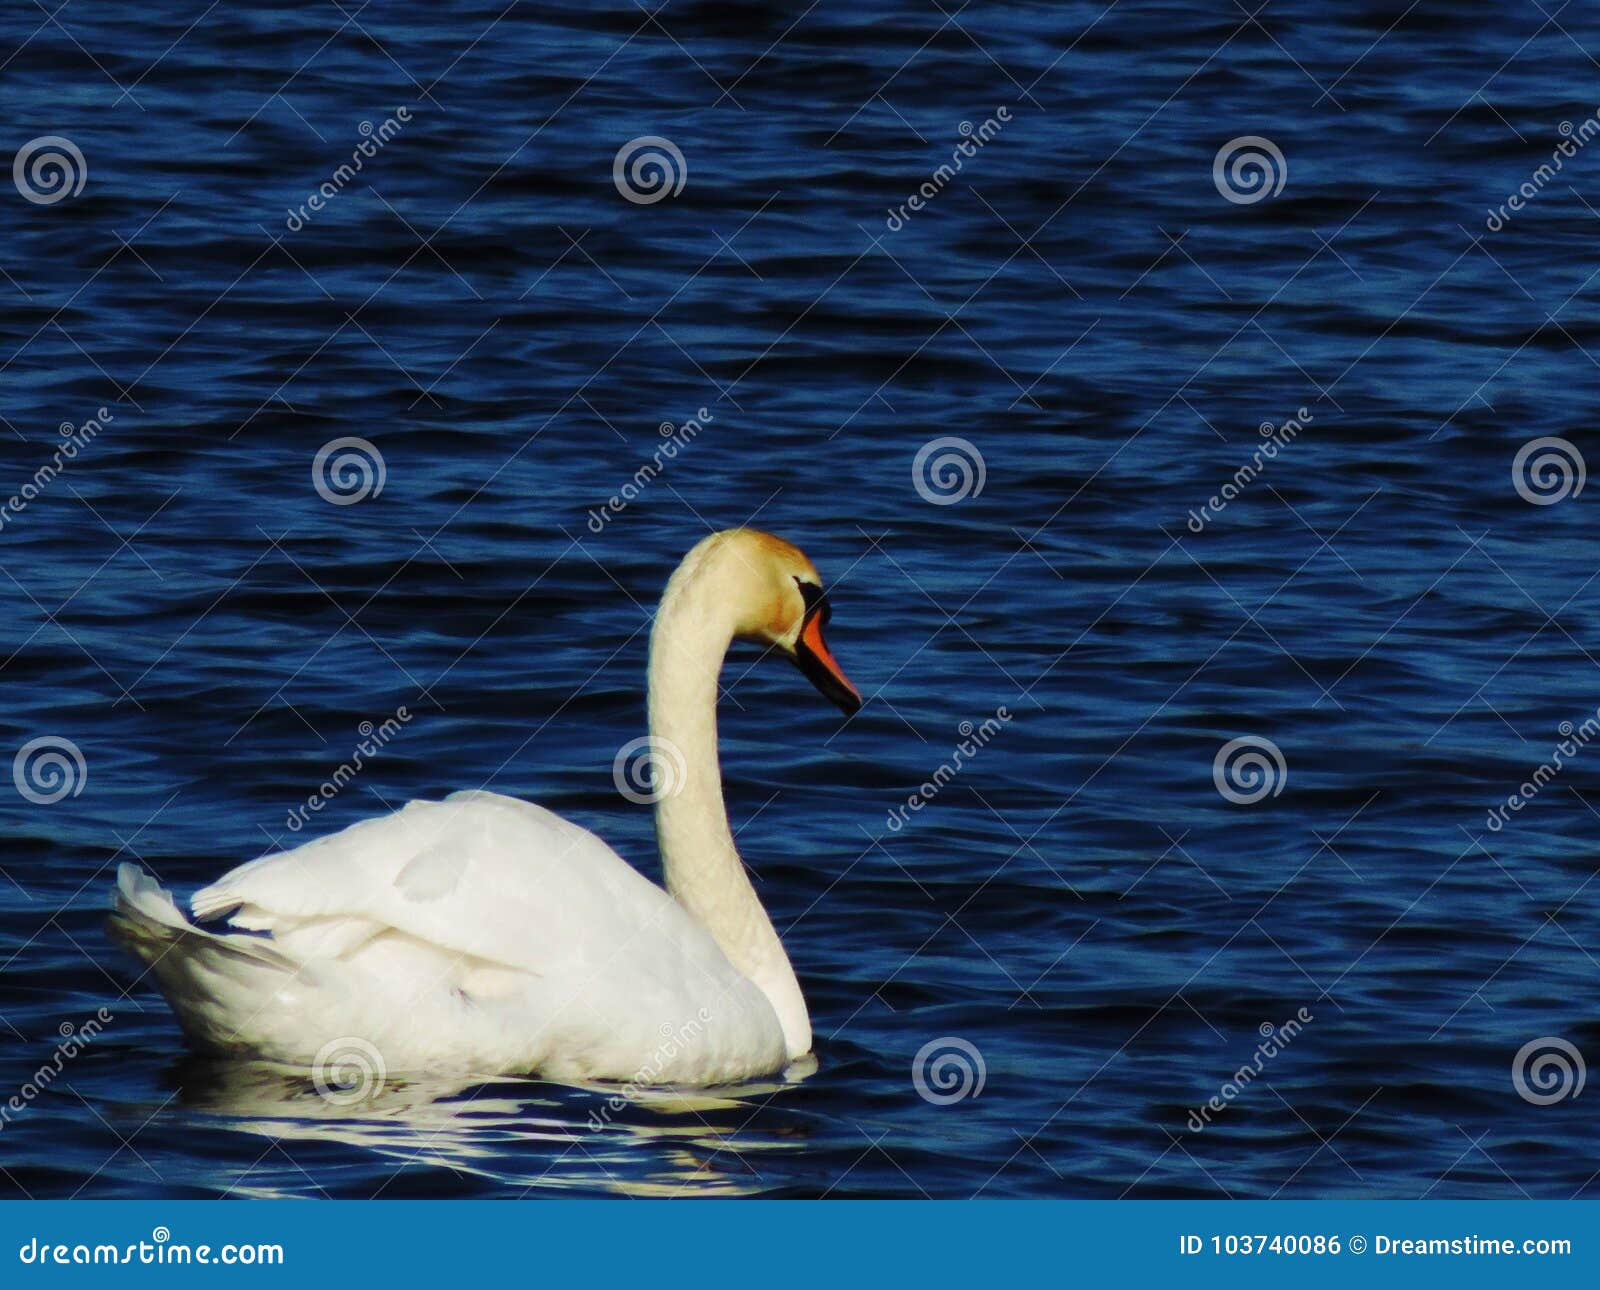 beautiful mute swan in the sea